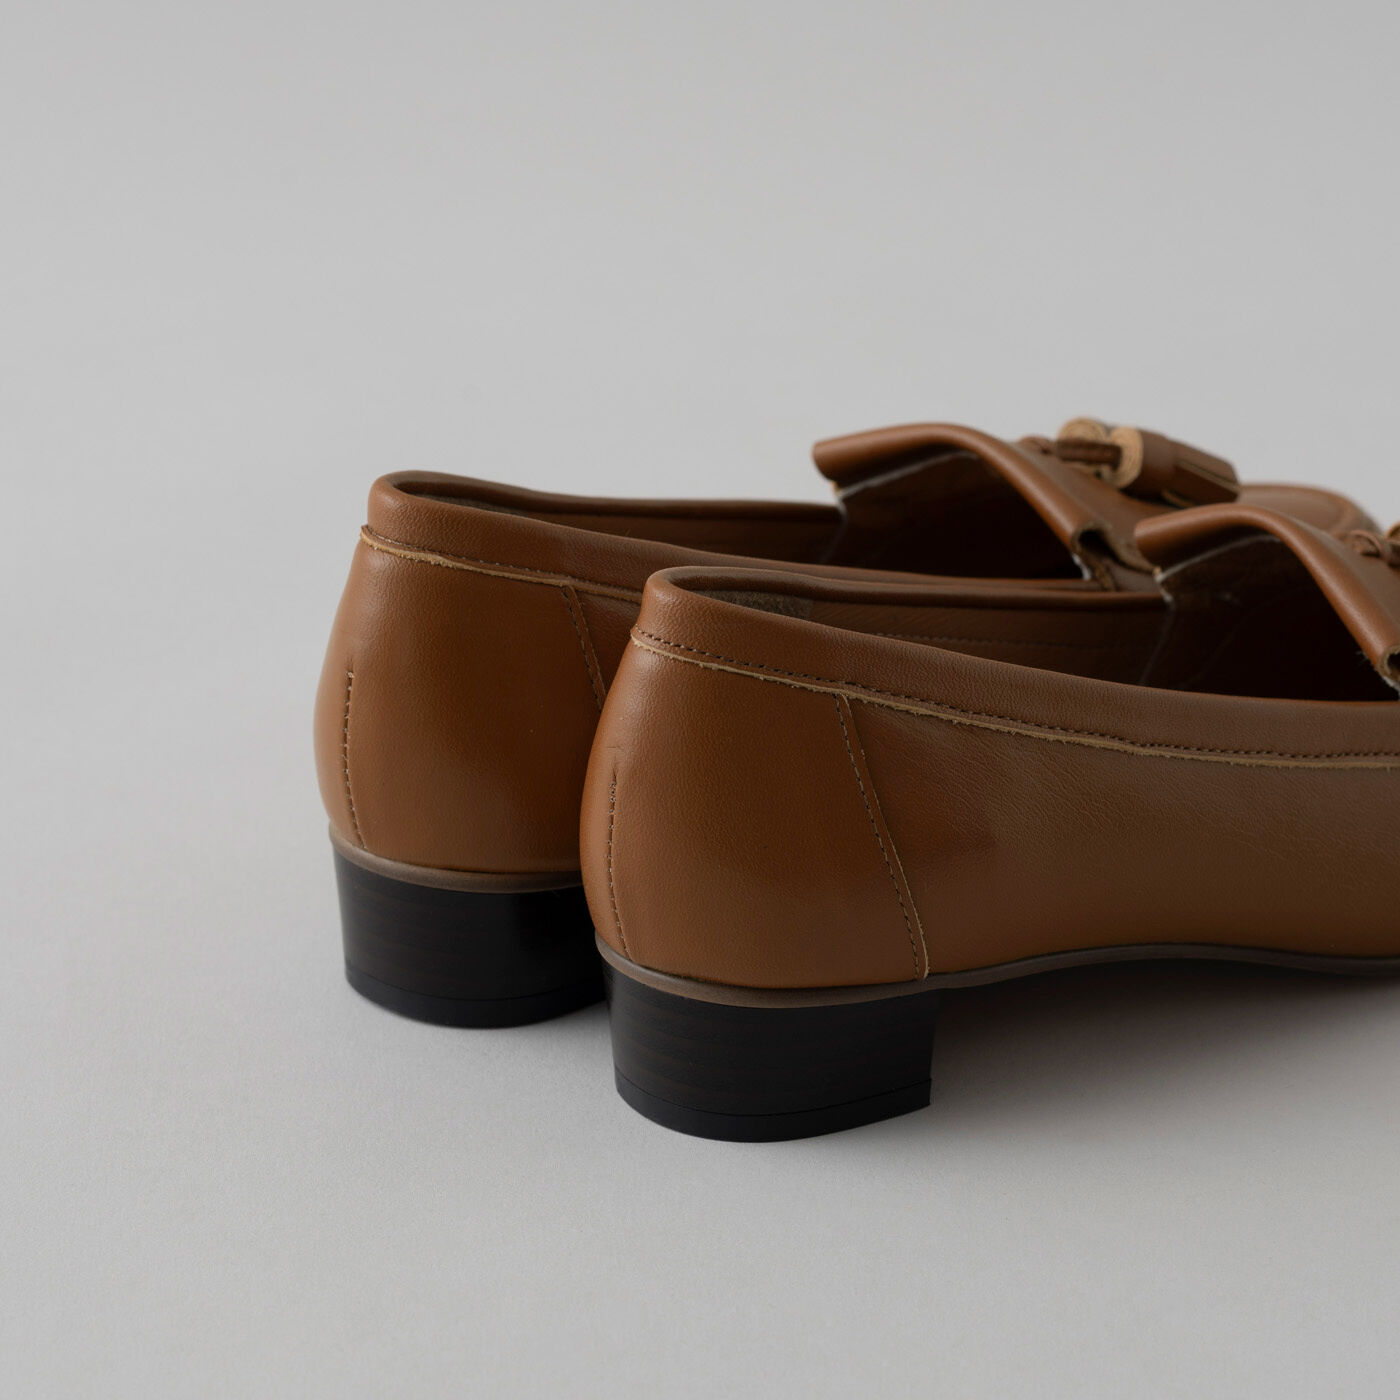 ＆Stories|長田の靴メーカーと作った　職人本革のタッセルローファー〈ブラウン〉|ほどよいヒール高と疲れにくいクッション性で、機能面もばっちり。